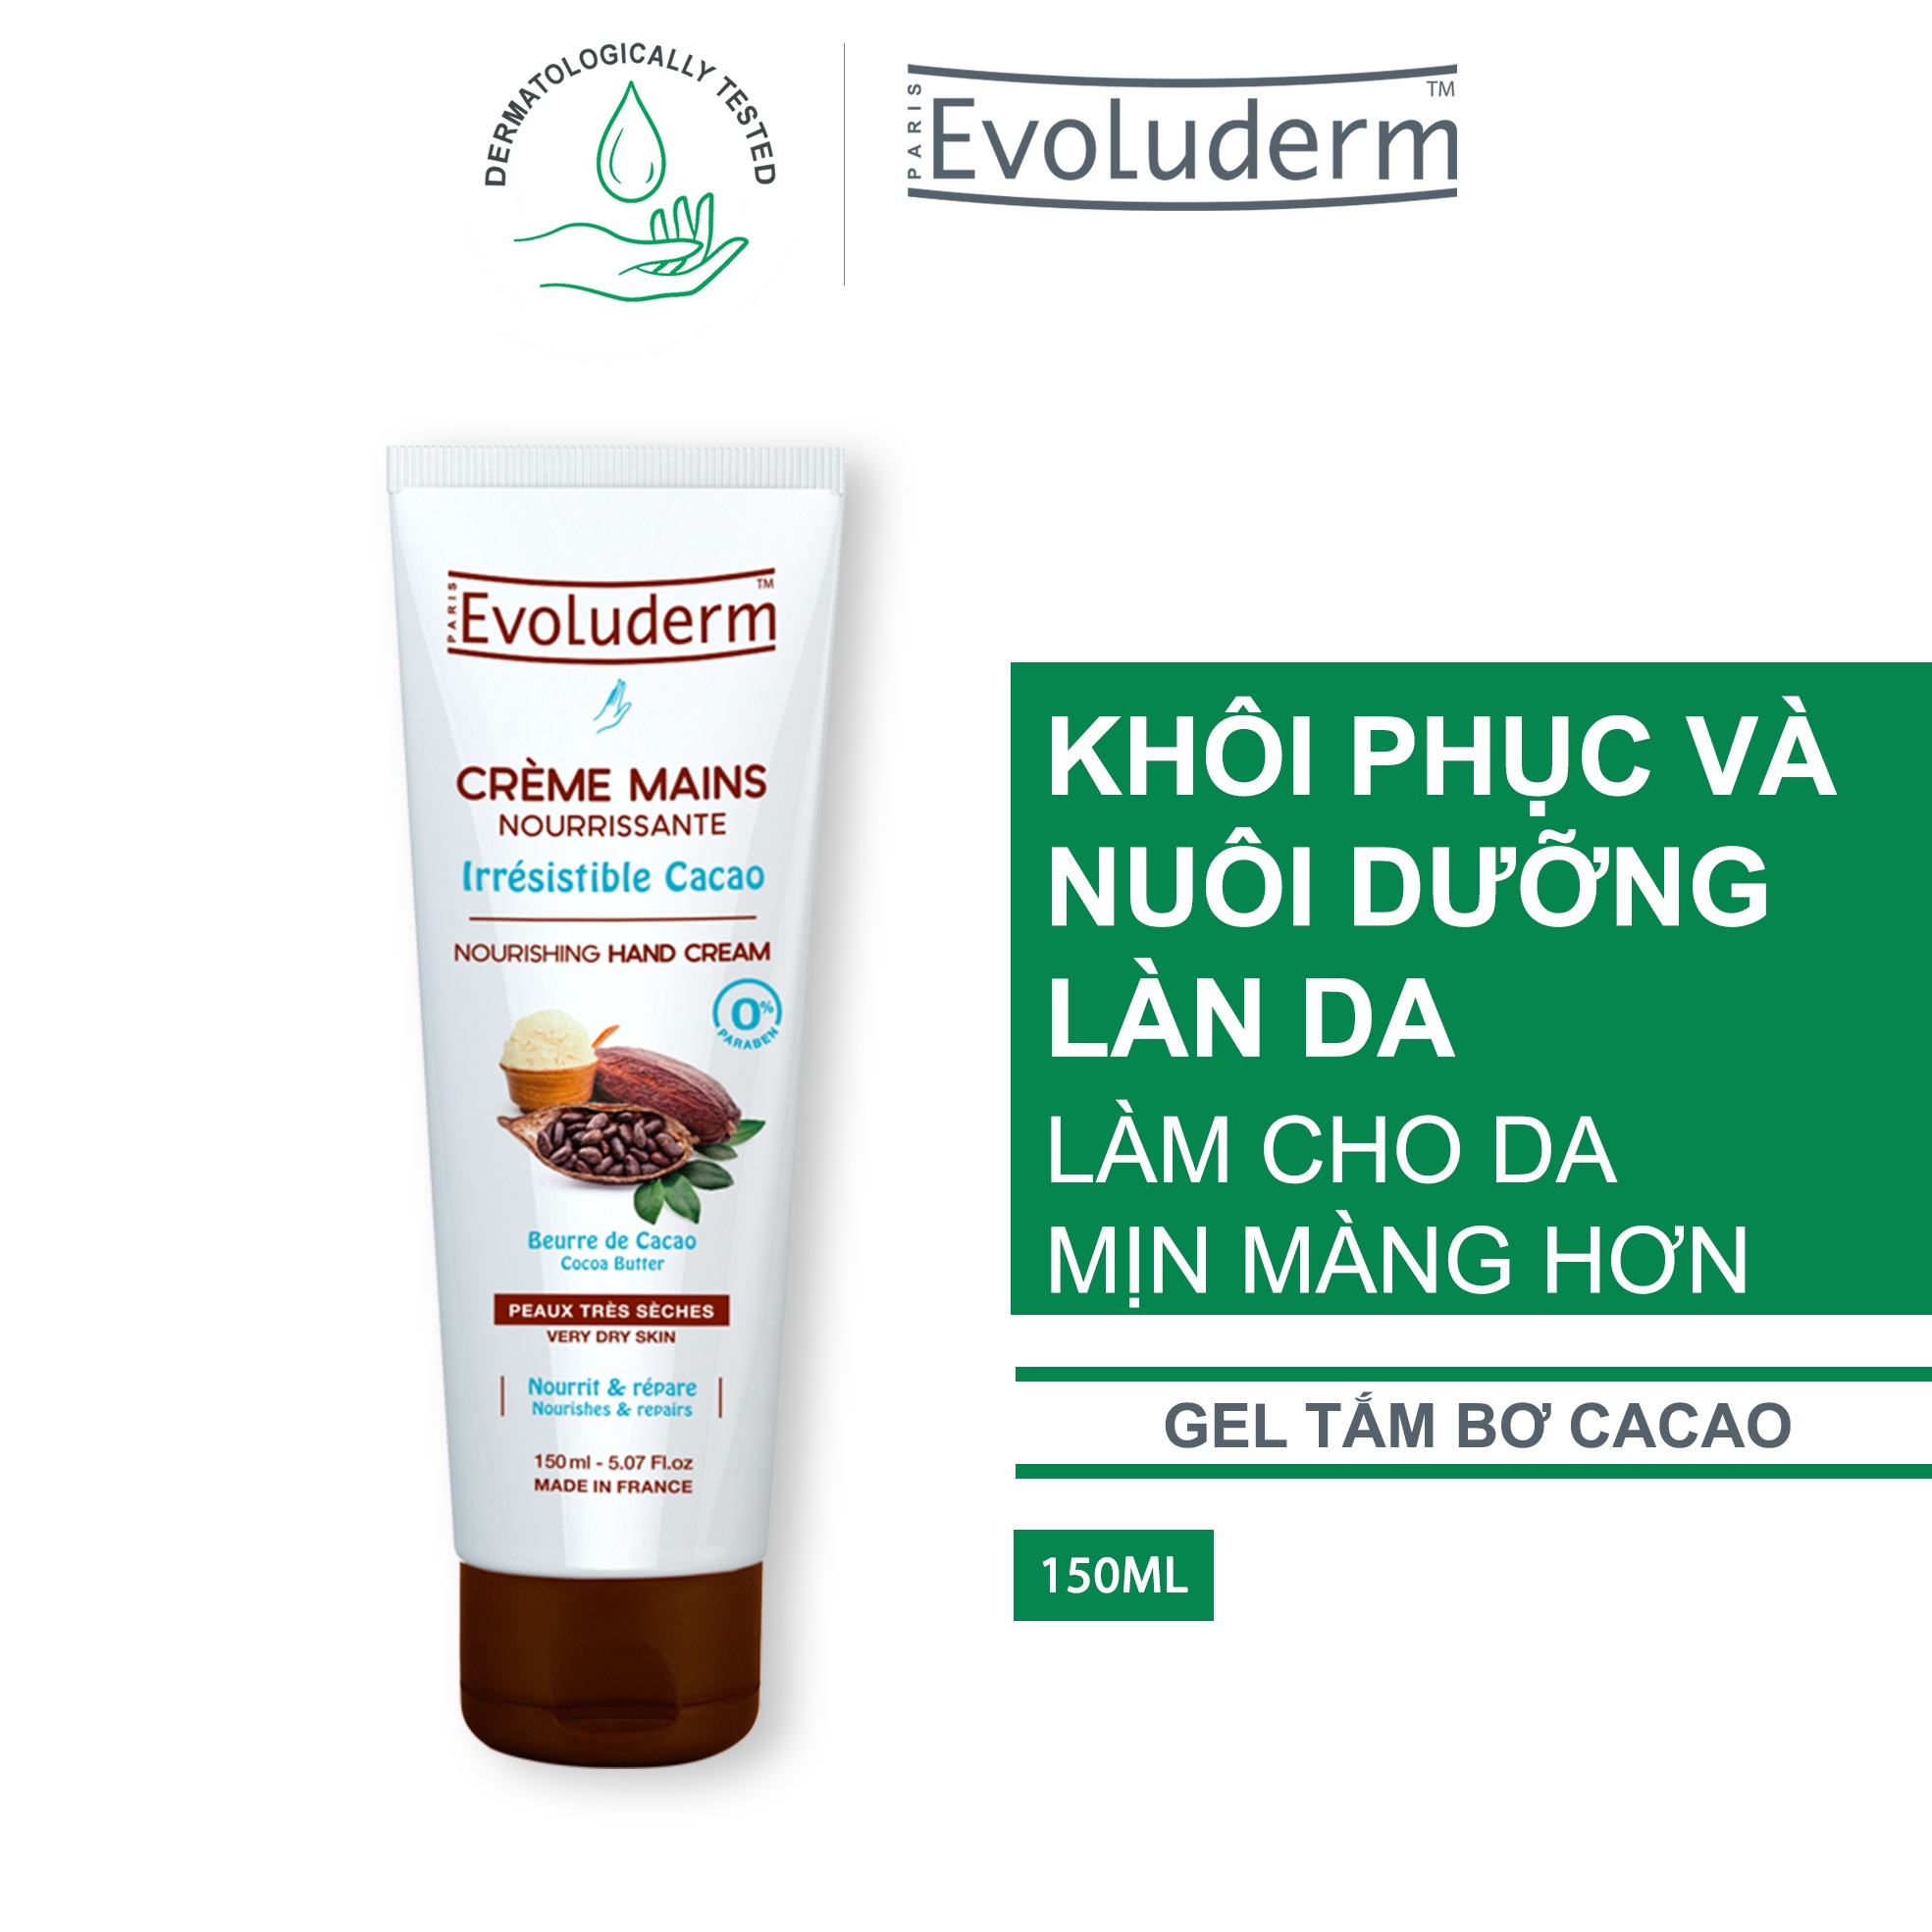 Combo xịt khoáng Evoluderm 400ml và kem dưỡng ẩm làm mềm bảo vệ da tay chiết xuất bơ cacao Evoluderm 150ml